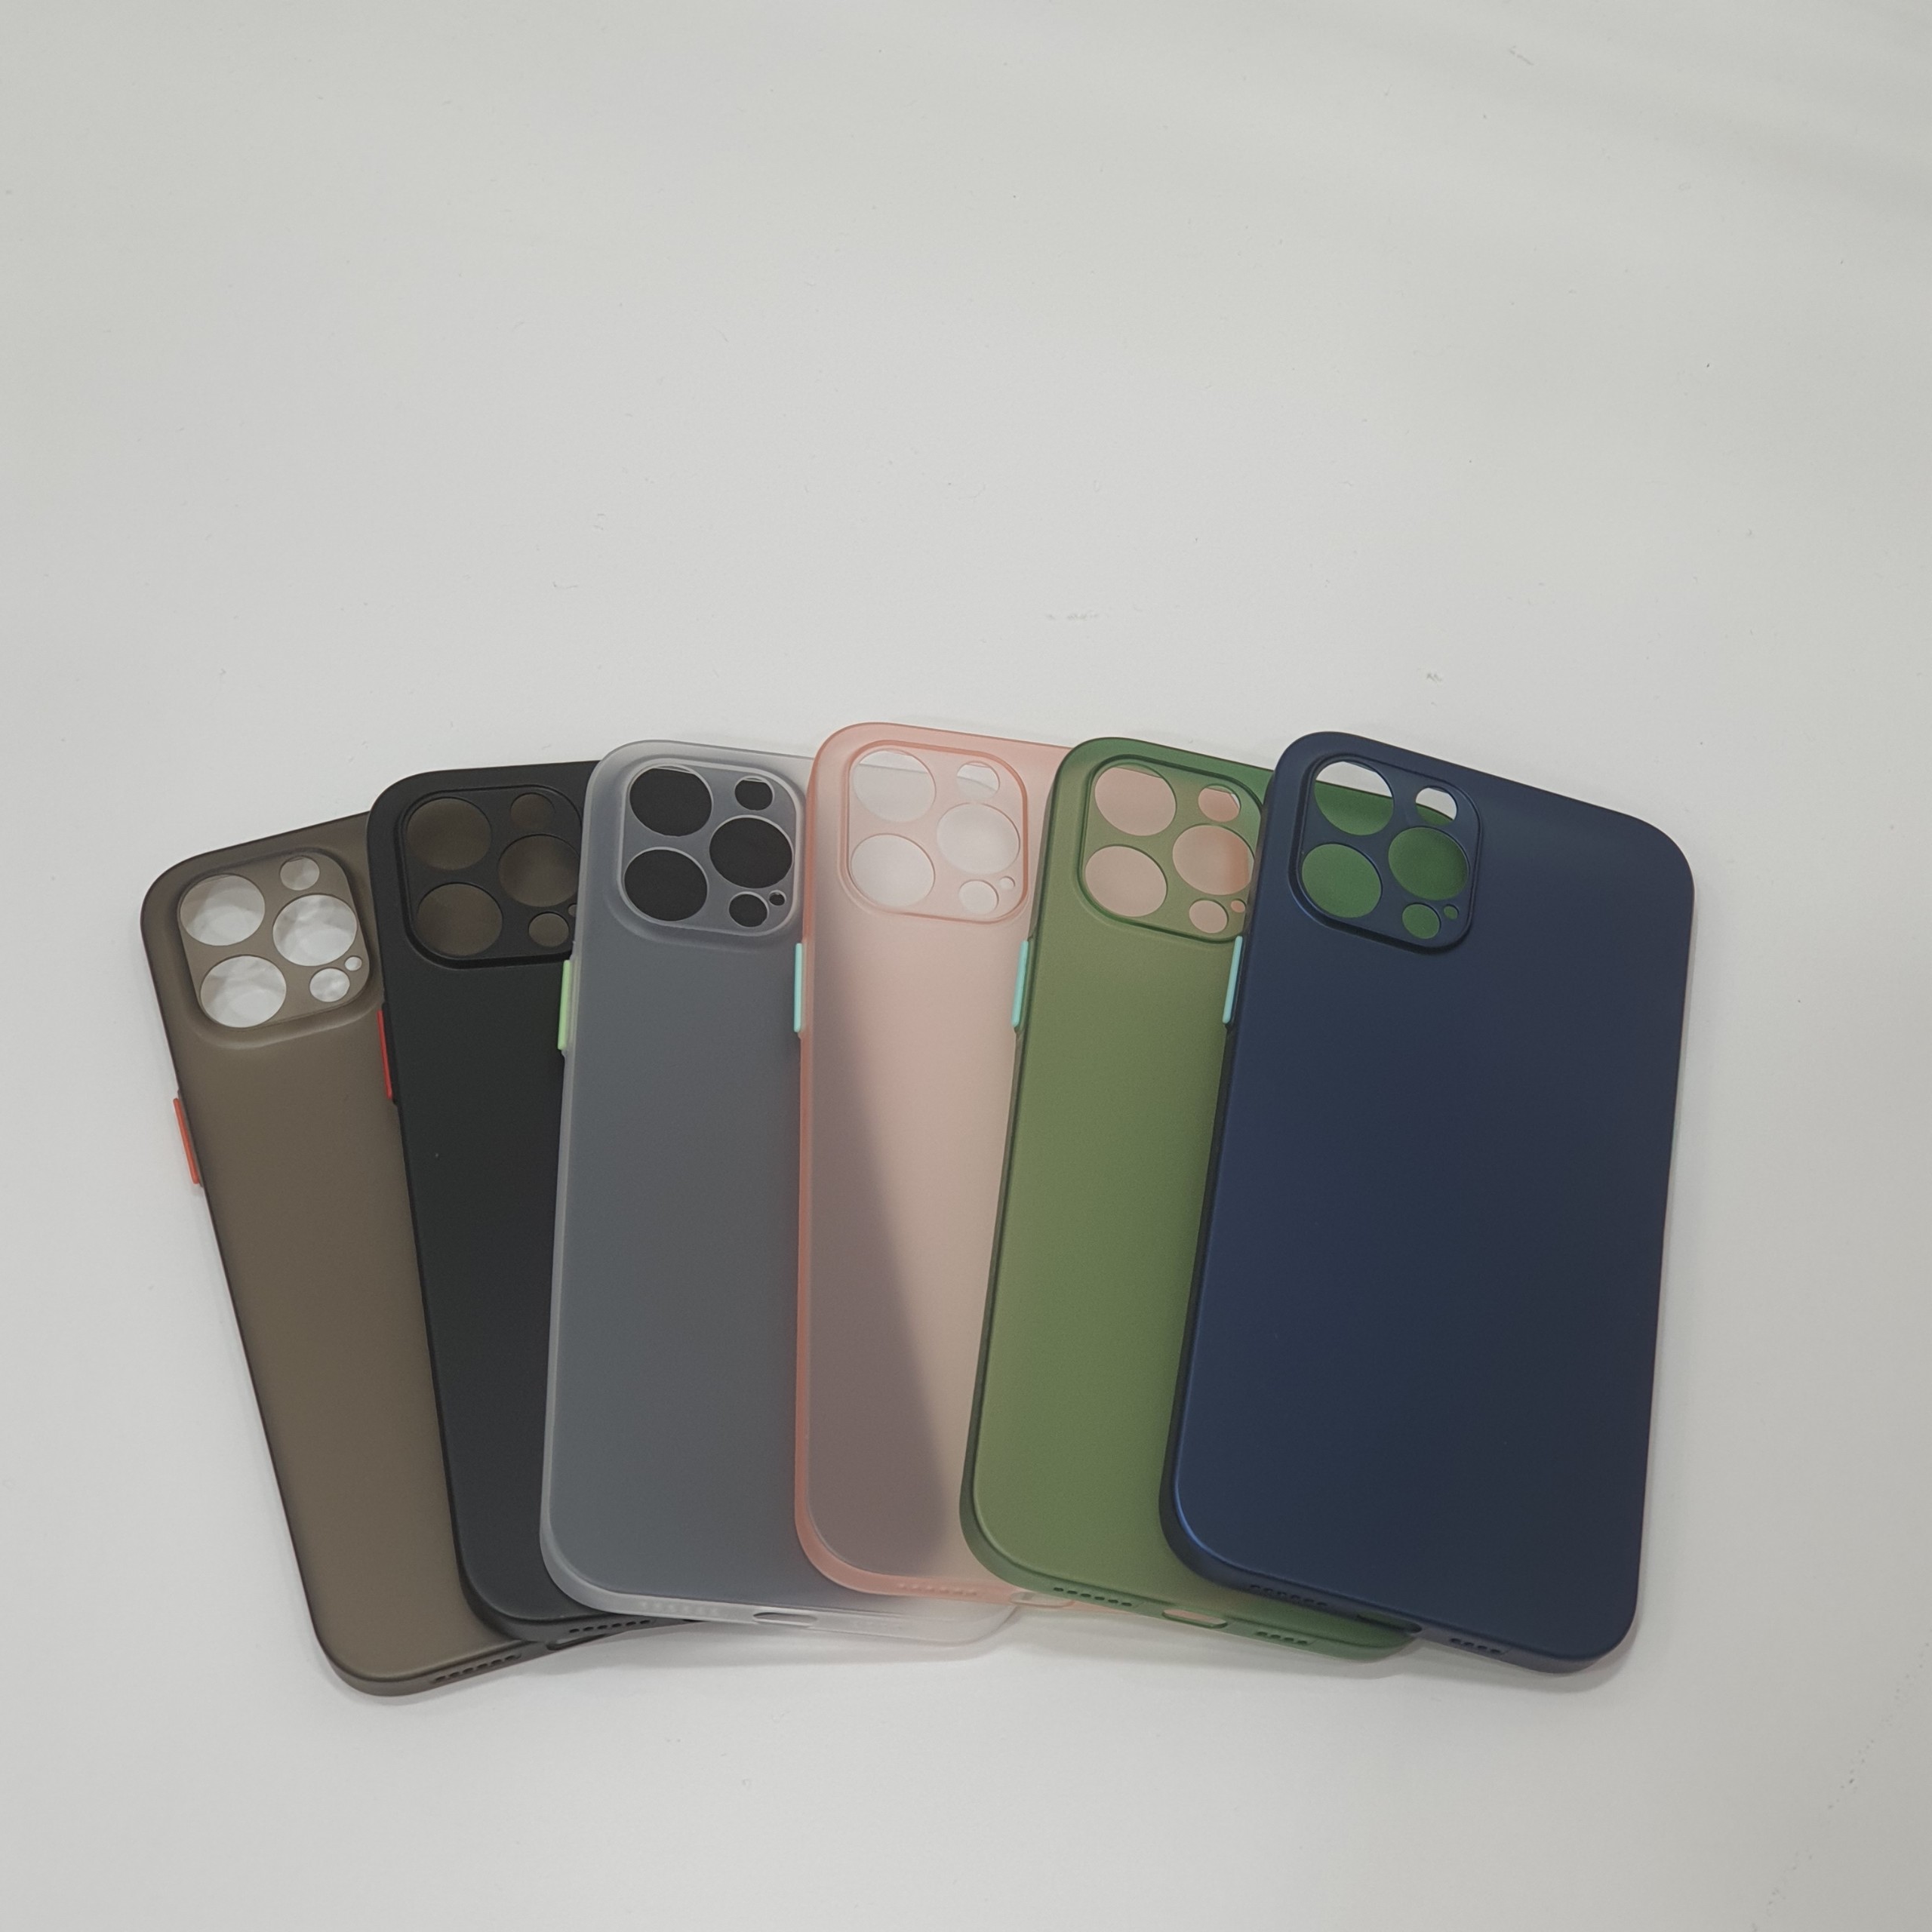 Ốp Lưng Cho iPhone 11, 11 Pro Max, 12, 12 Pro, 12 Pro Max - Trong Suốt Mờ Nhám, Chống Bụi, Chống Trày Xước, Mỏng Nhẹ (Nhiều Màu)